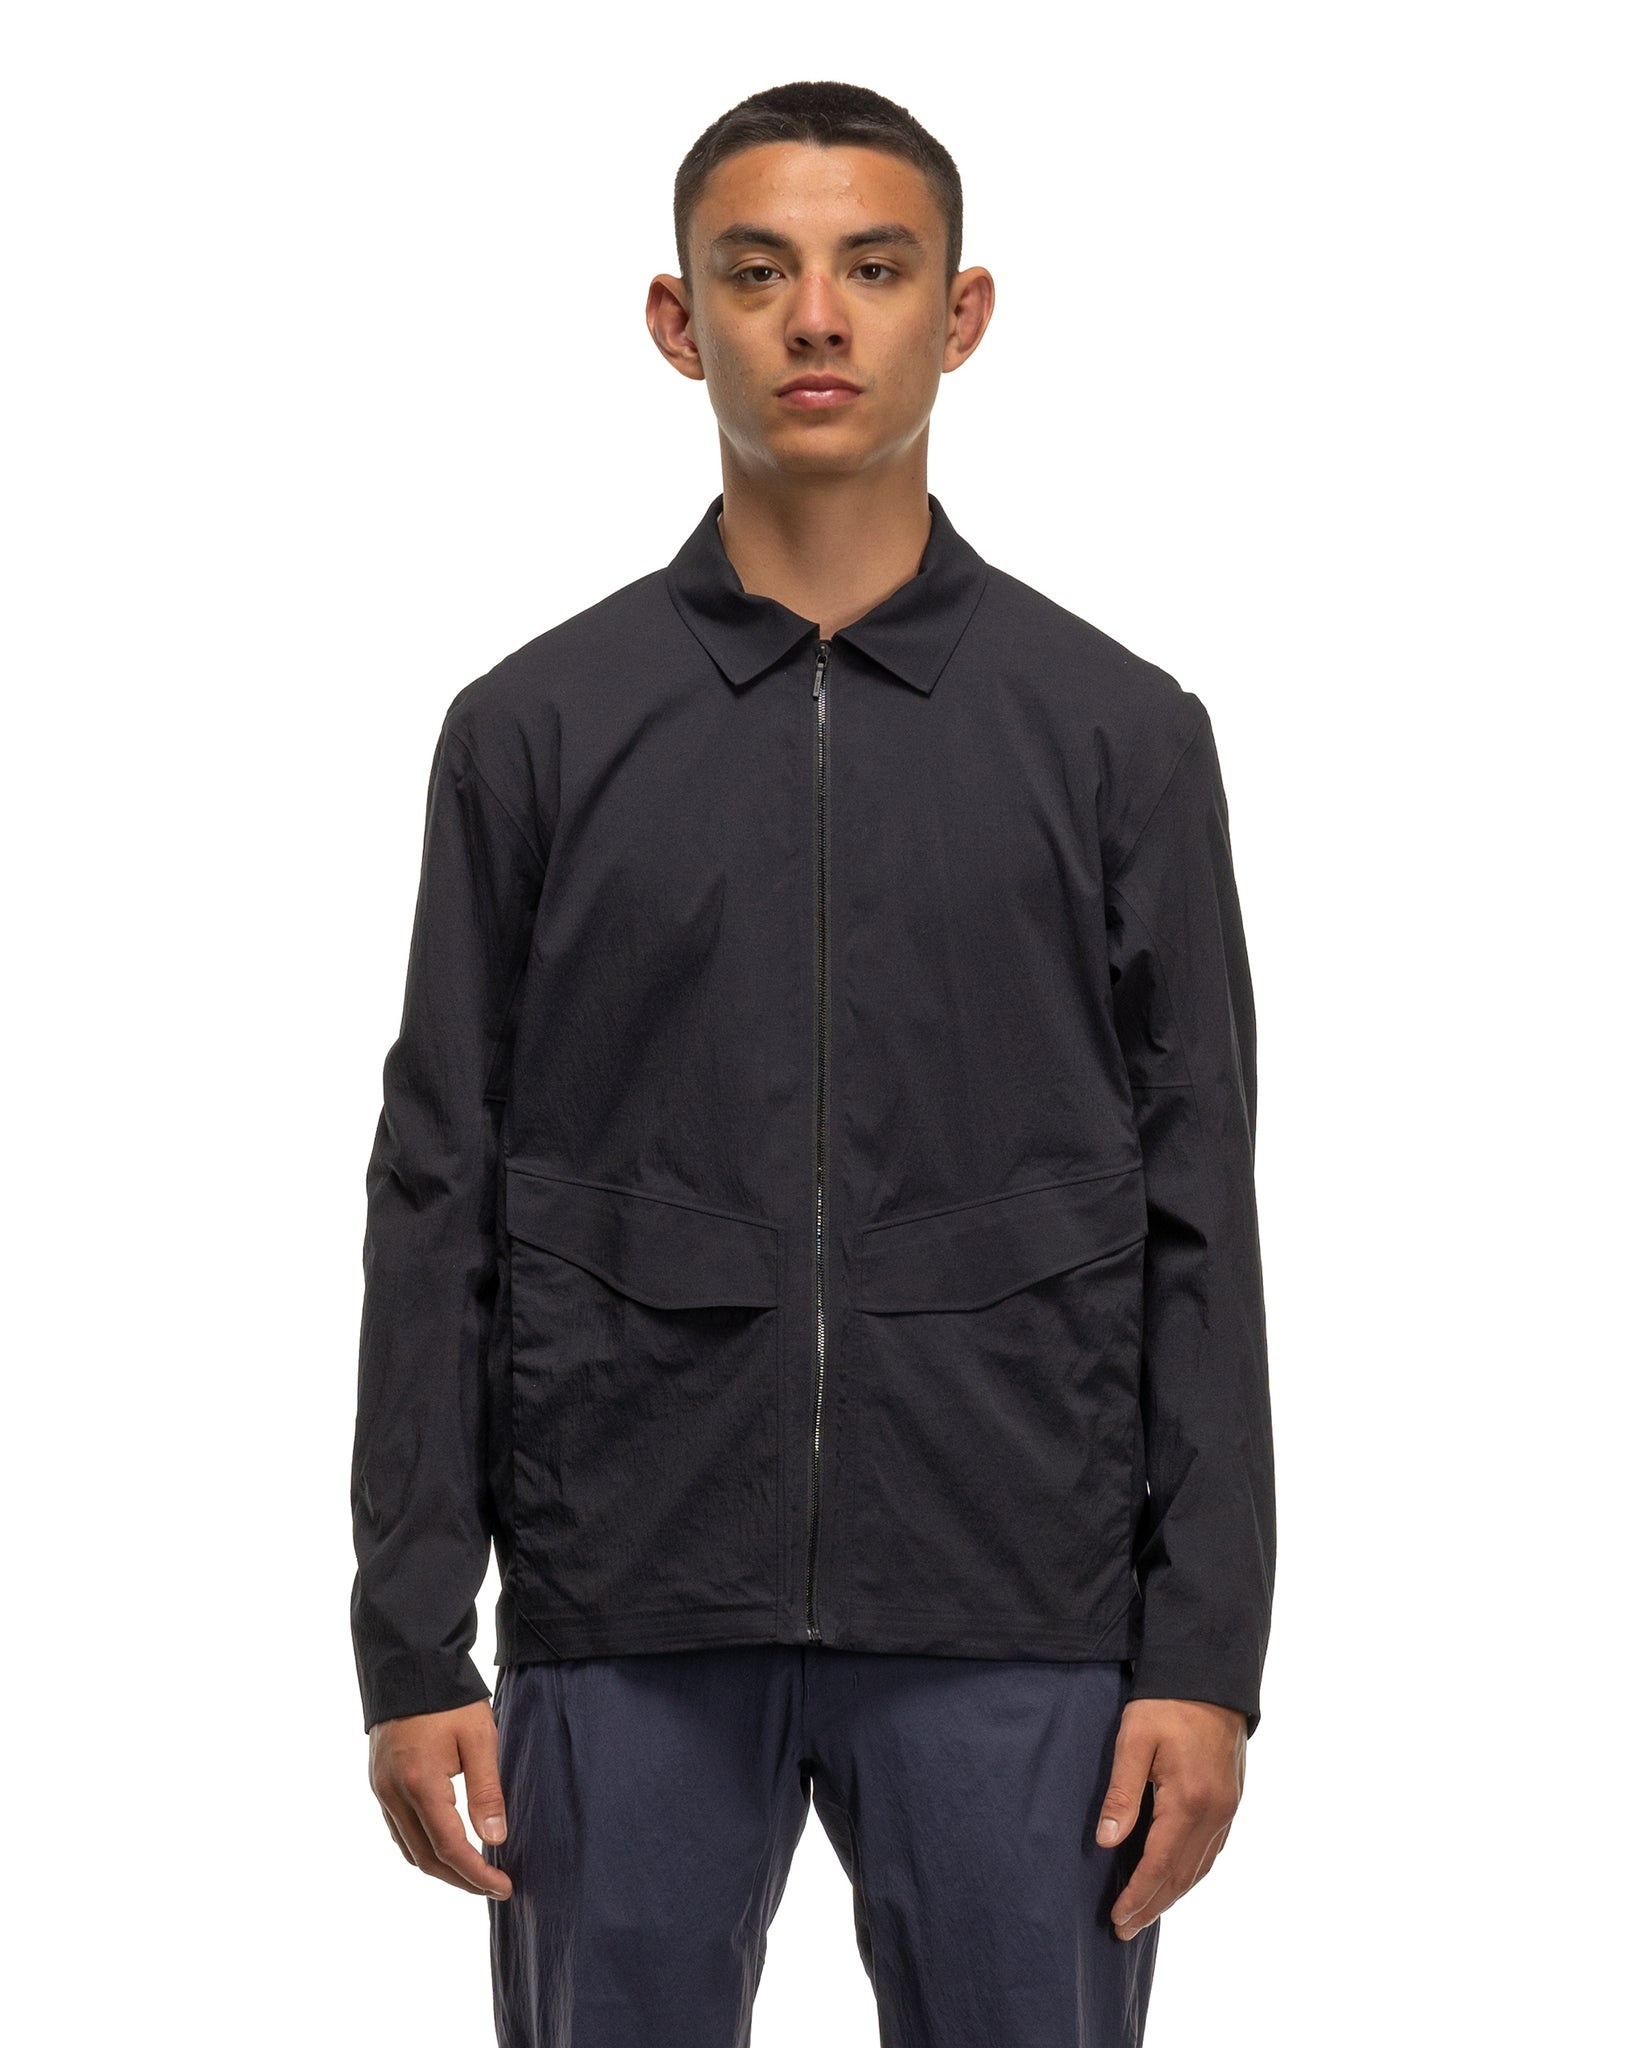 Veilance zip-up shirt jacket - Grey